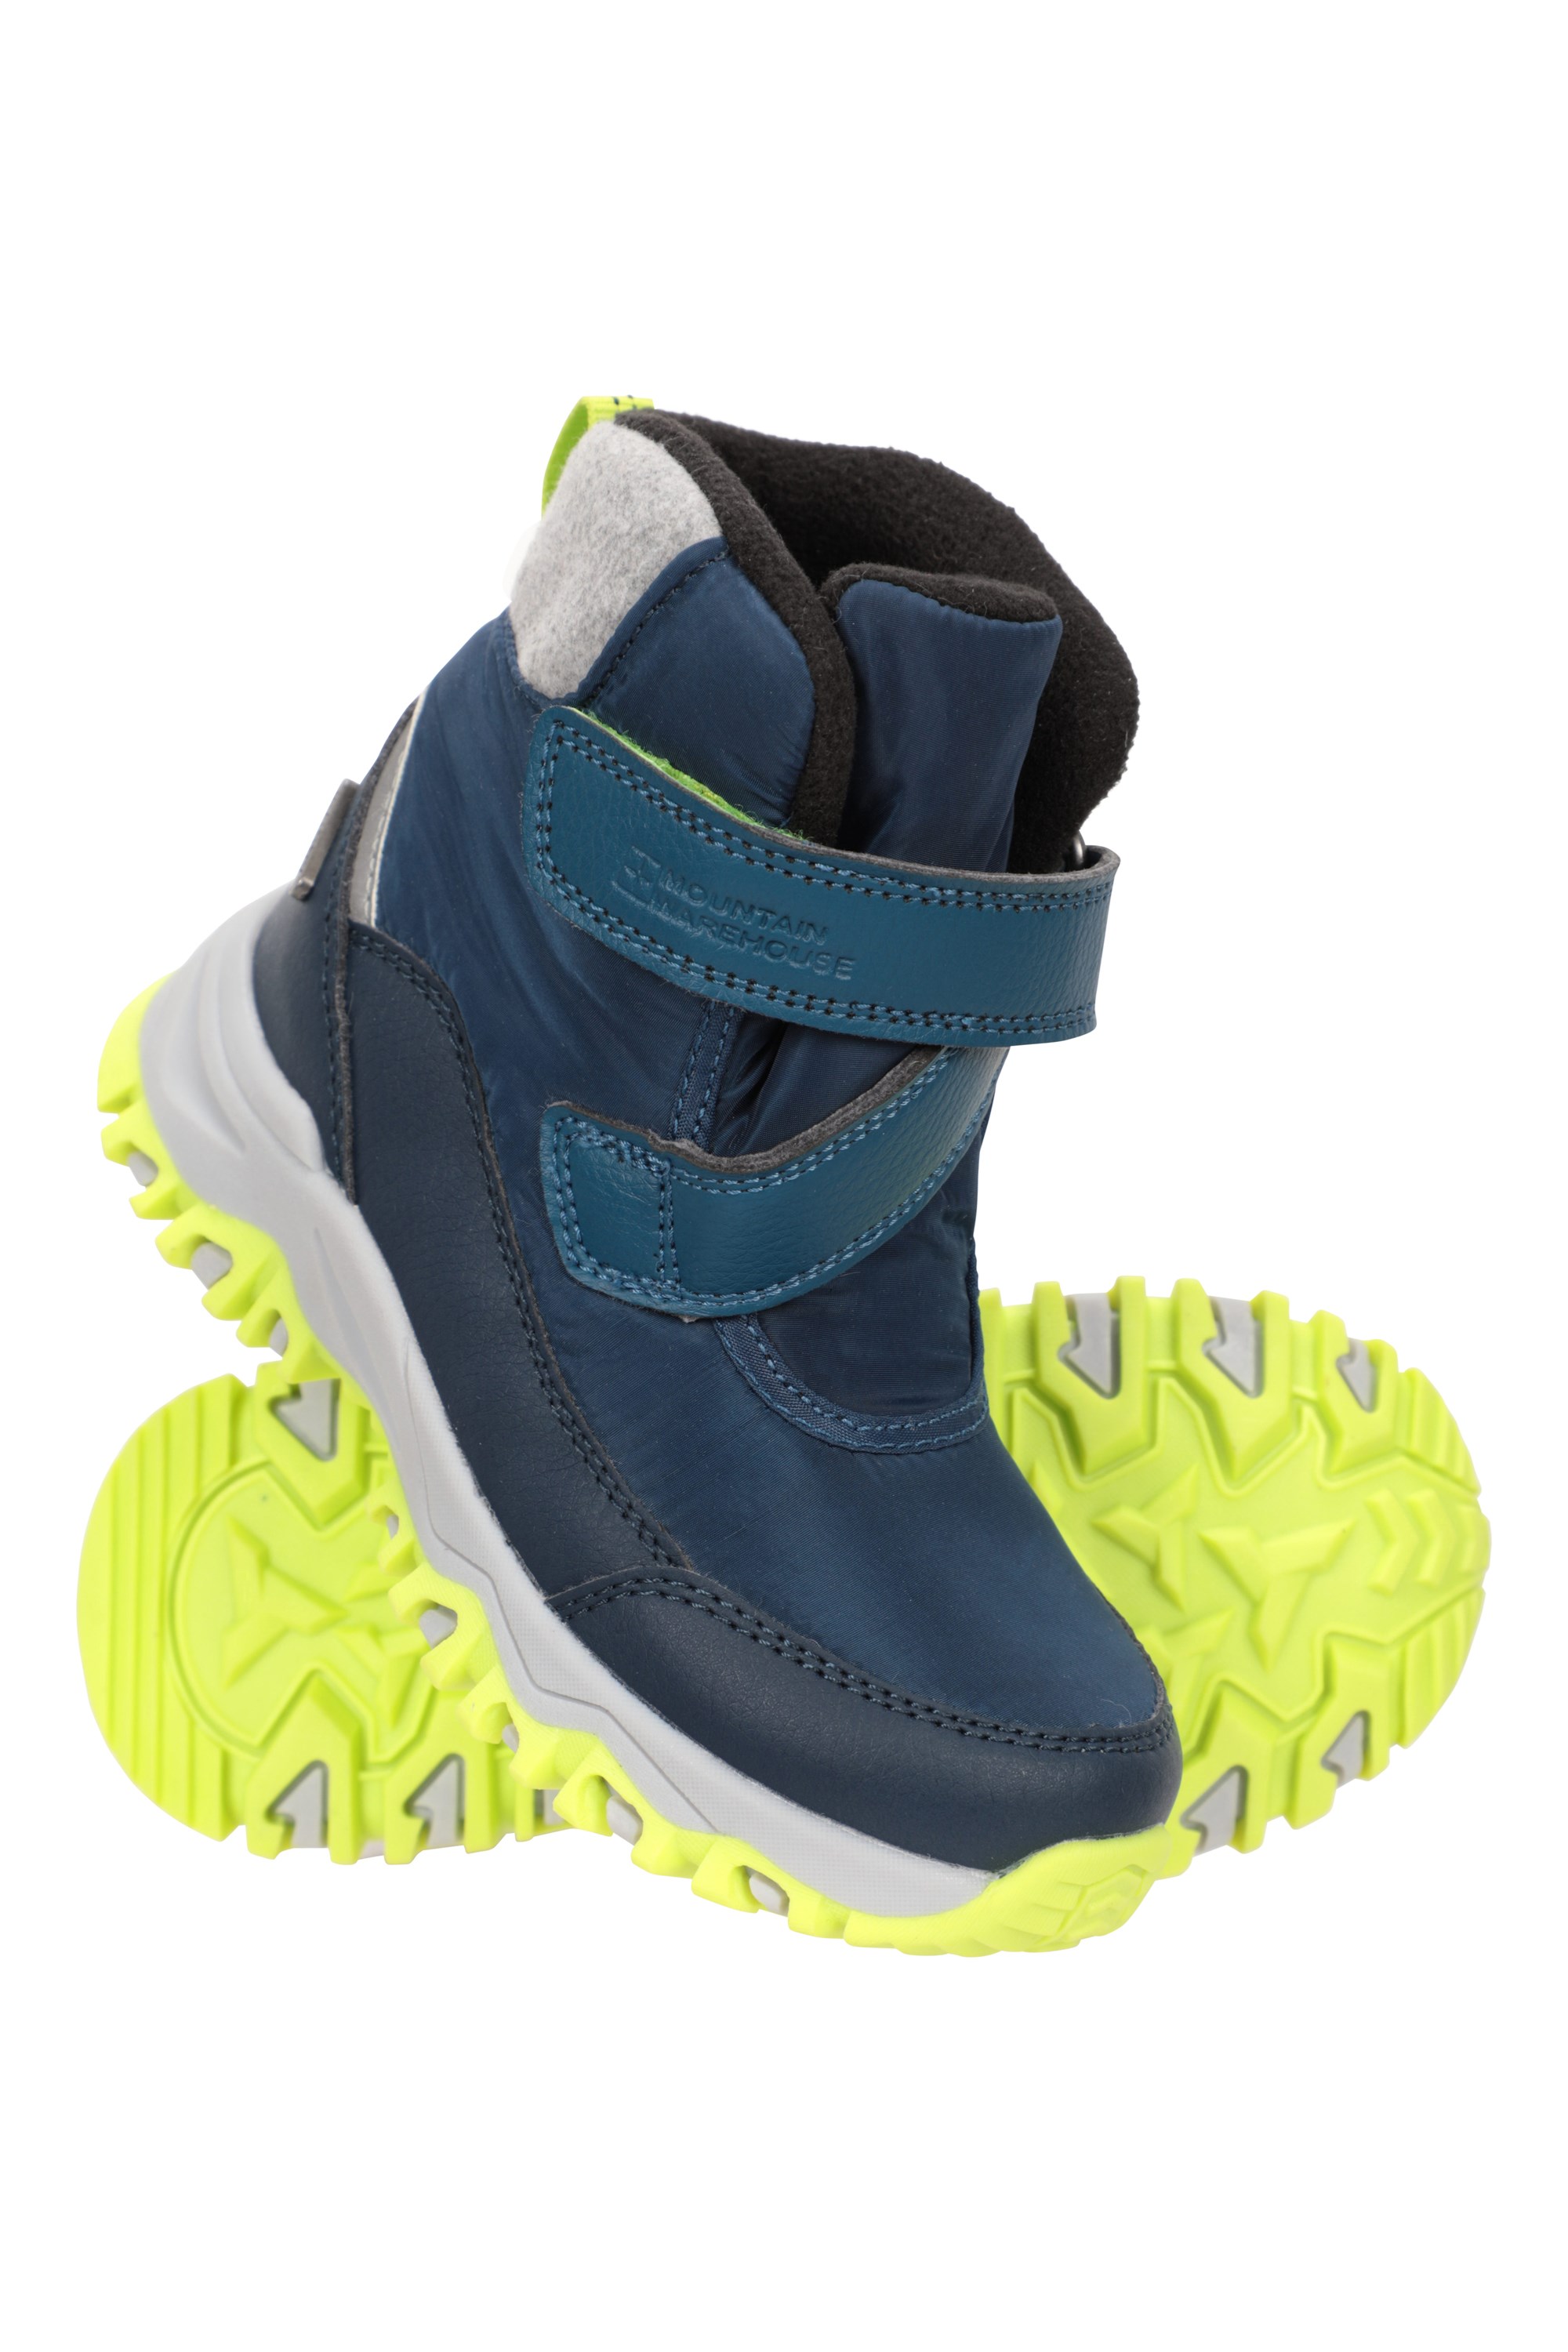 Alpine Kids Waterproof Snow Boots - Navy